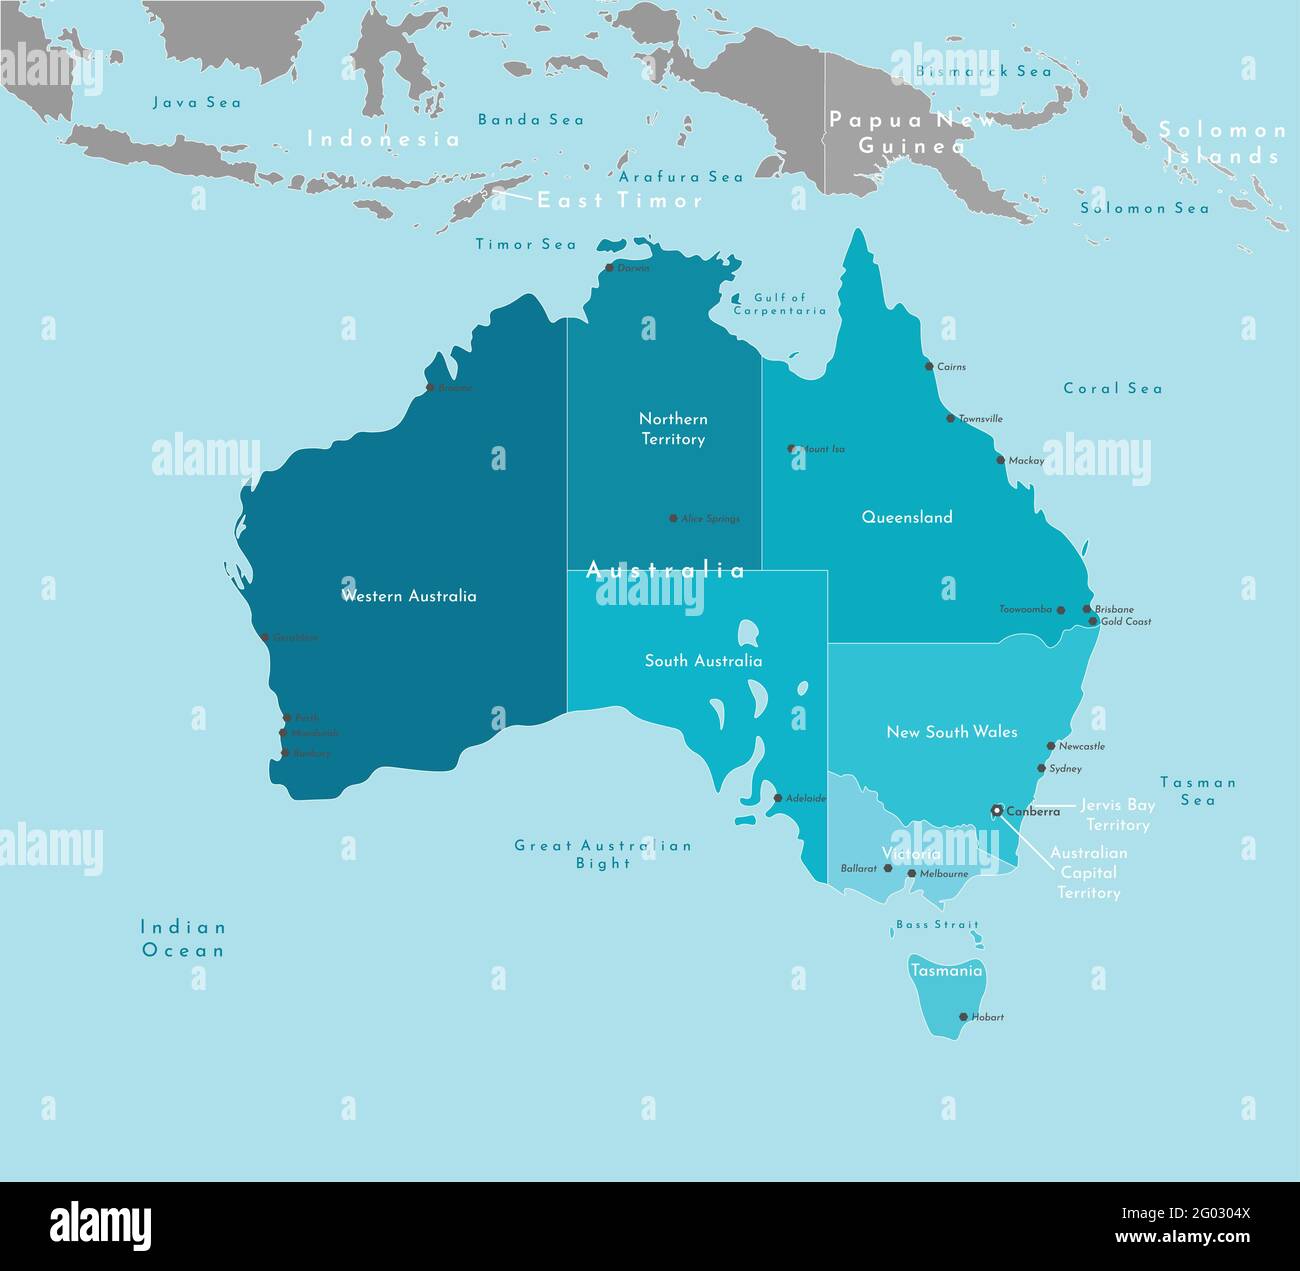 Illustrazione moderna vettoriale. Mappa geografica semplificata dell'Australia e delle zone più vicine (Indonesia, Papua Nuova Guinea e così via). Sfondo blu di Indi Illustrazione Vettoriale